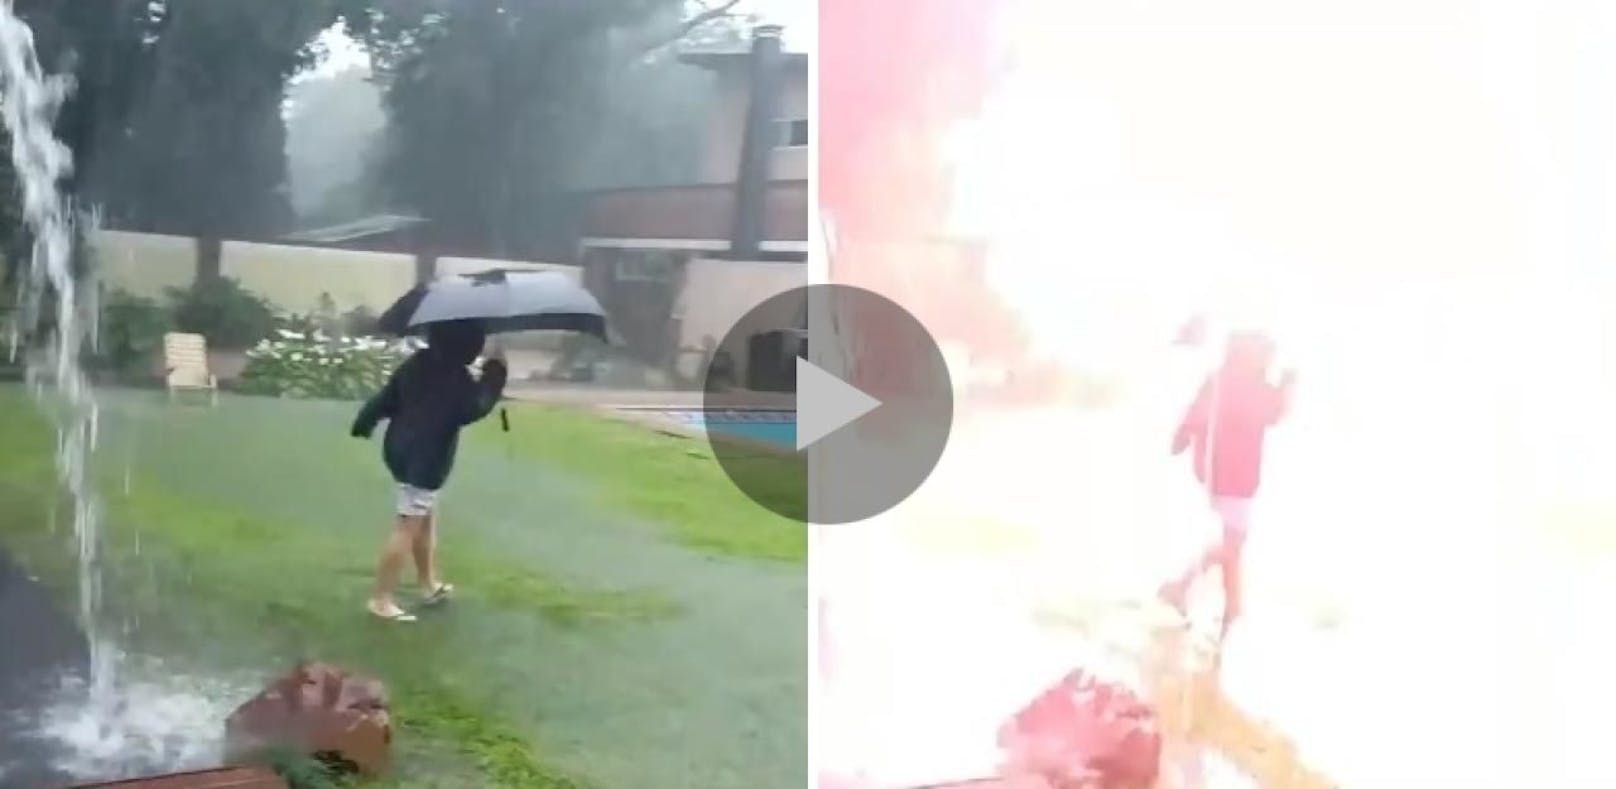 Unglaubliches Video: Blitz schlägt neben Bub ein